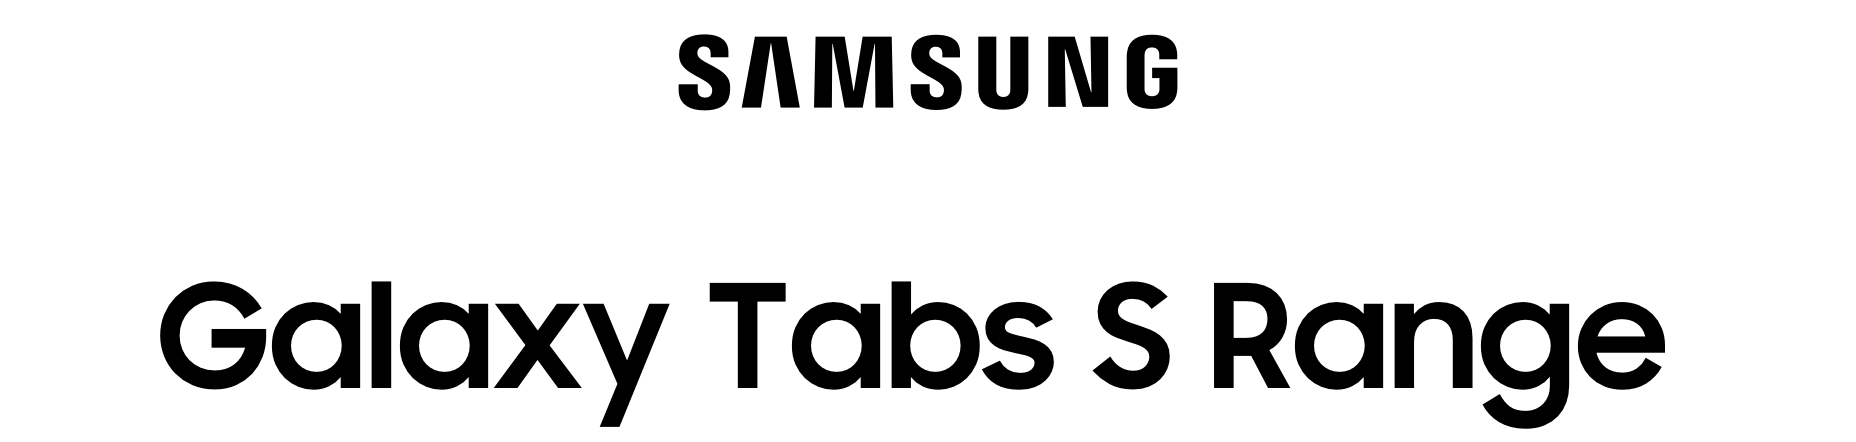 samsung-tablet-logo